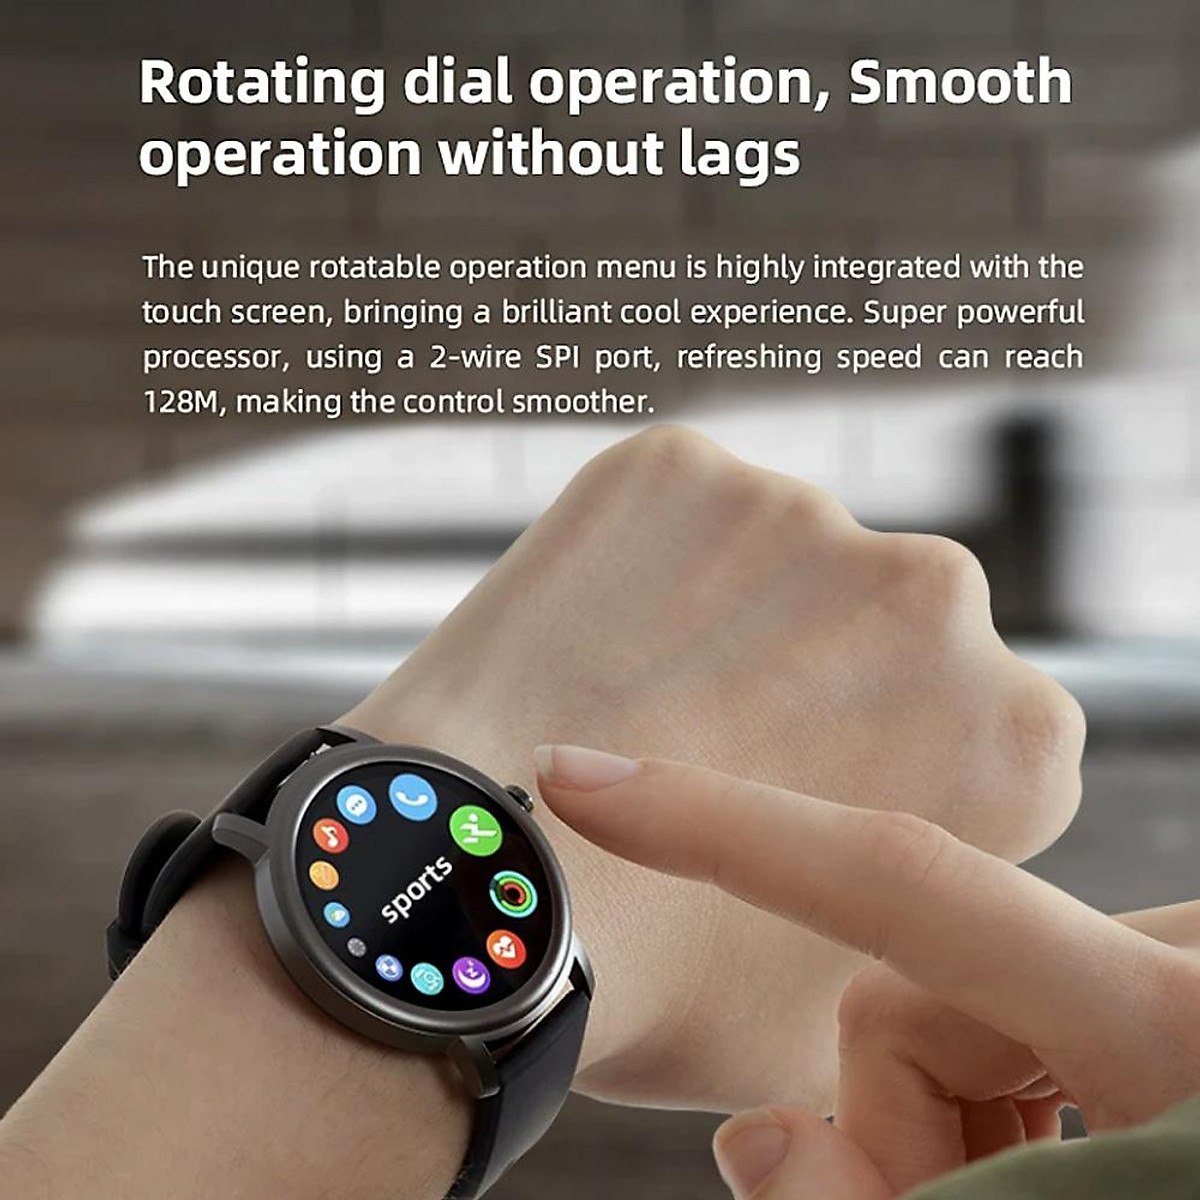 Mibro Air Smart Watch XPAW001 Global Version là một trong những chiếc đồng hồ thông minh tốt nhất trên thị trường hiện nay. Với nhiều tính năng thông minh và thiết kế đẹp mắt, không có lý do gì để bạn không xem ngay bây giờ.